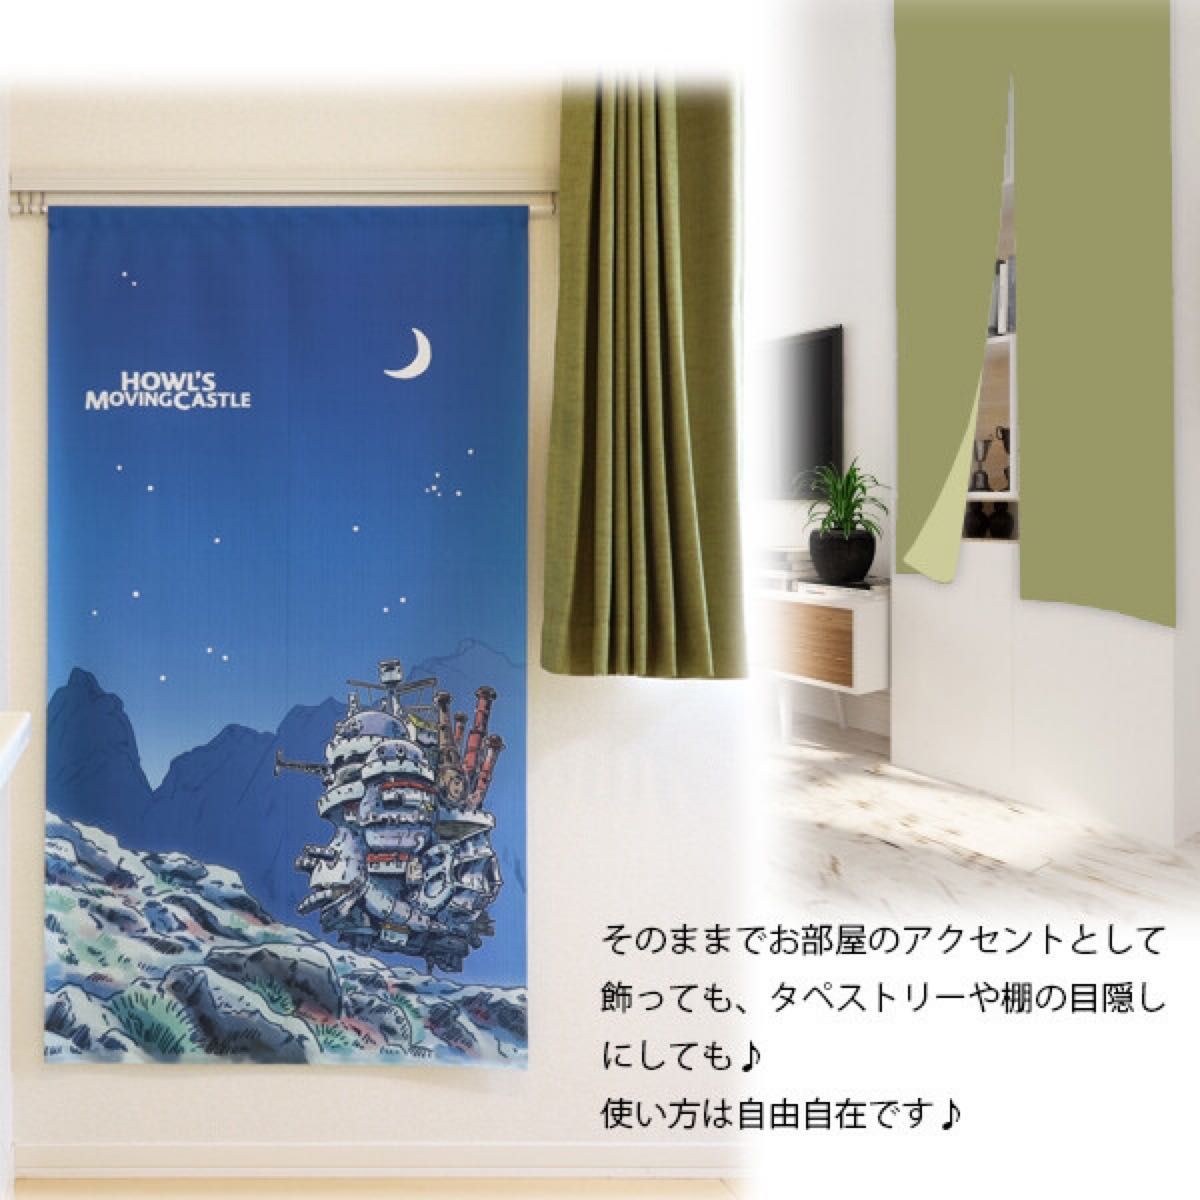 【新品】のれん ジブリ ハウルの動く城 「月夜」85×150cm【日本製】